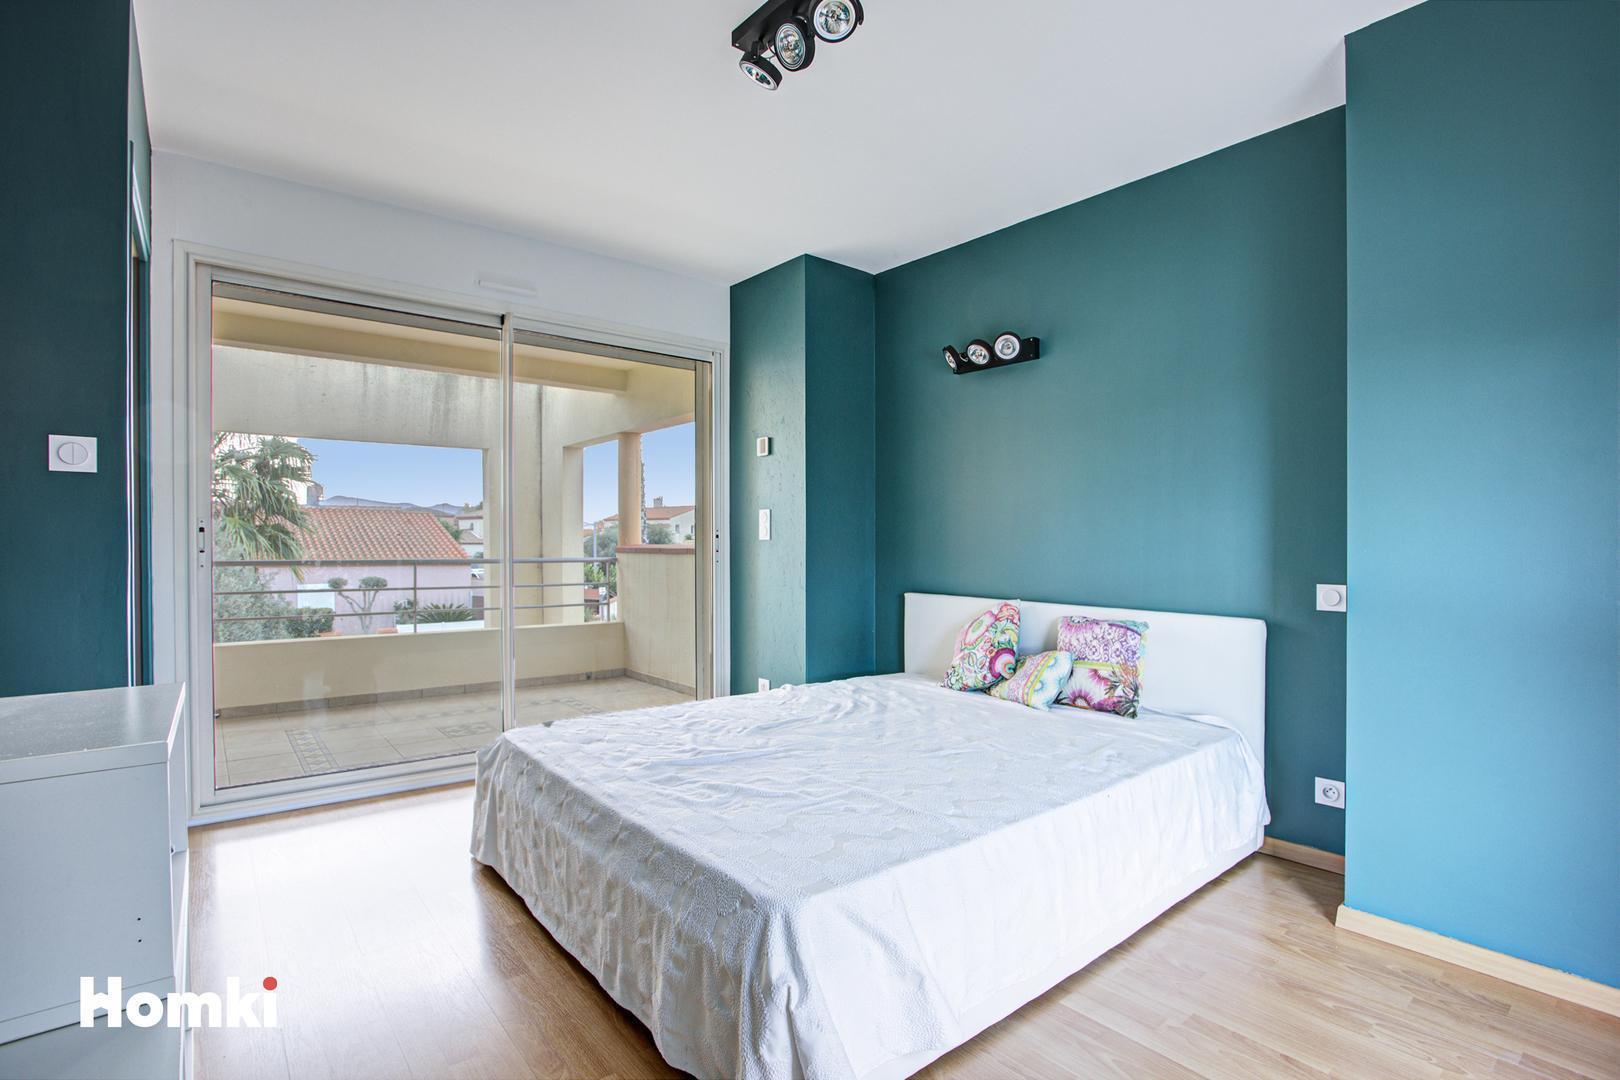 Homki - Vente Maison/villa  de 191.0 m² à Perpignan 66000